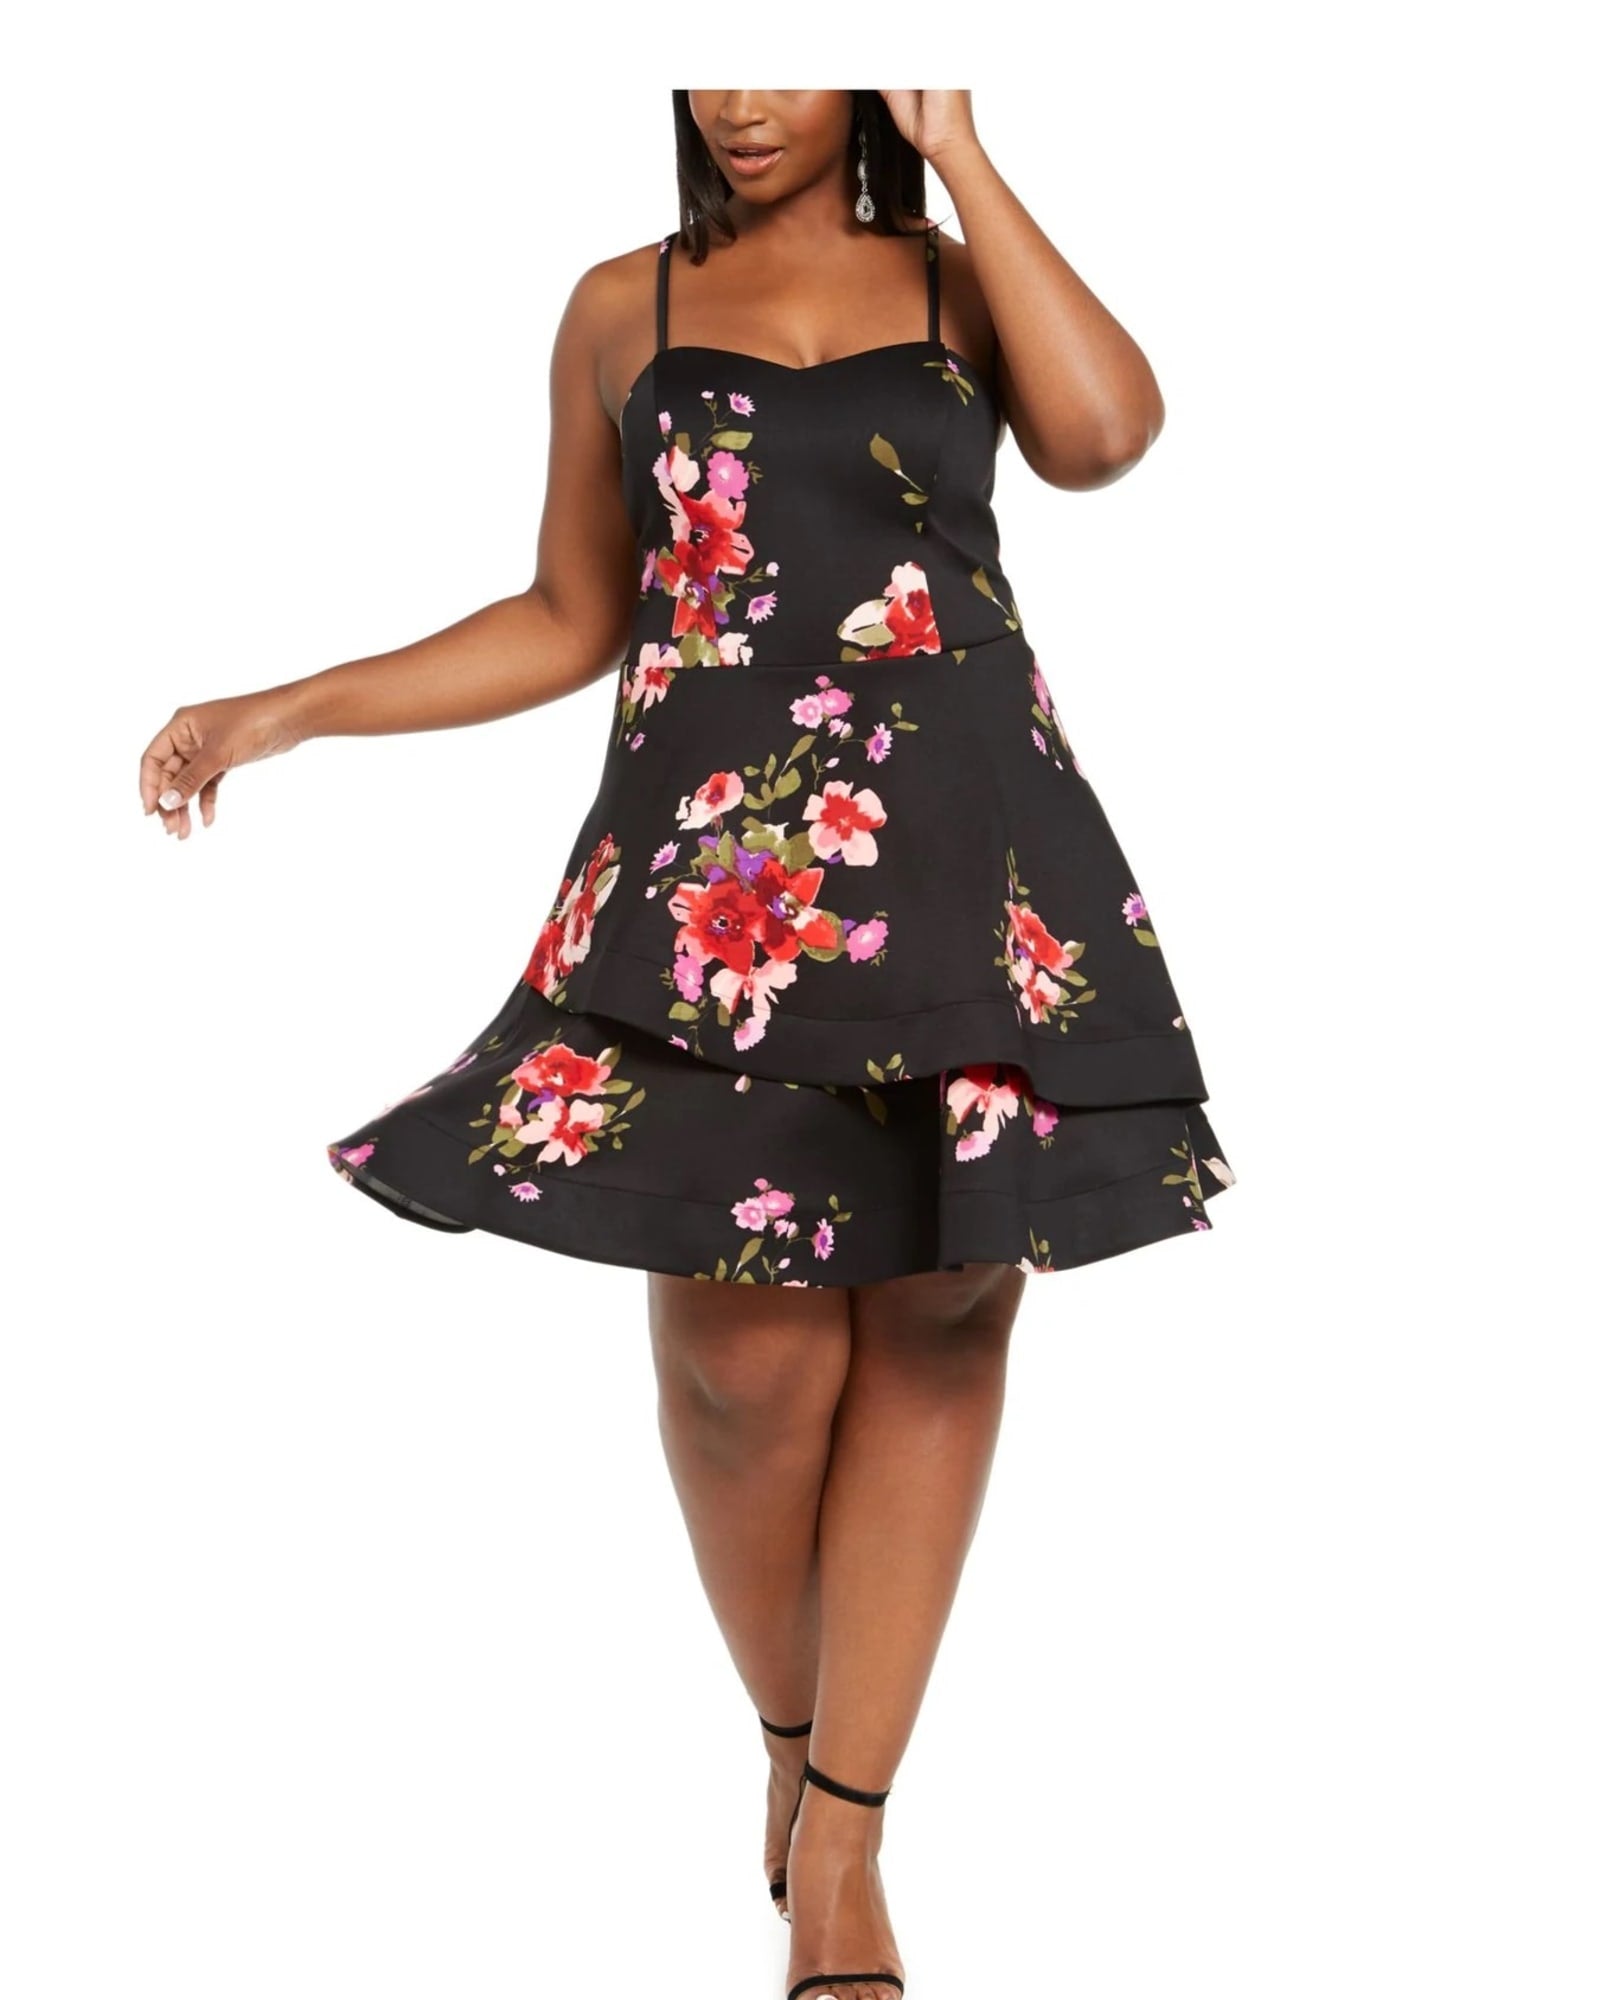 Sequin Hearts Women's Trendy Plus Size Floral Fit & Flare Dress Black Size 20 | Black